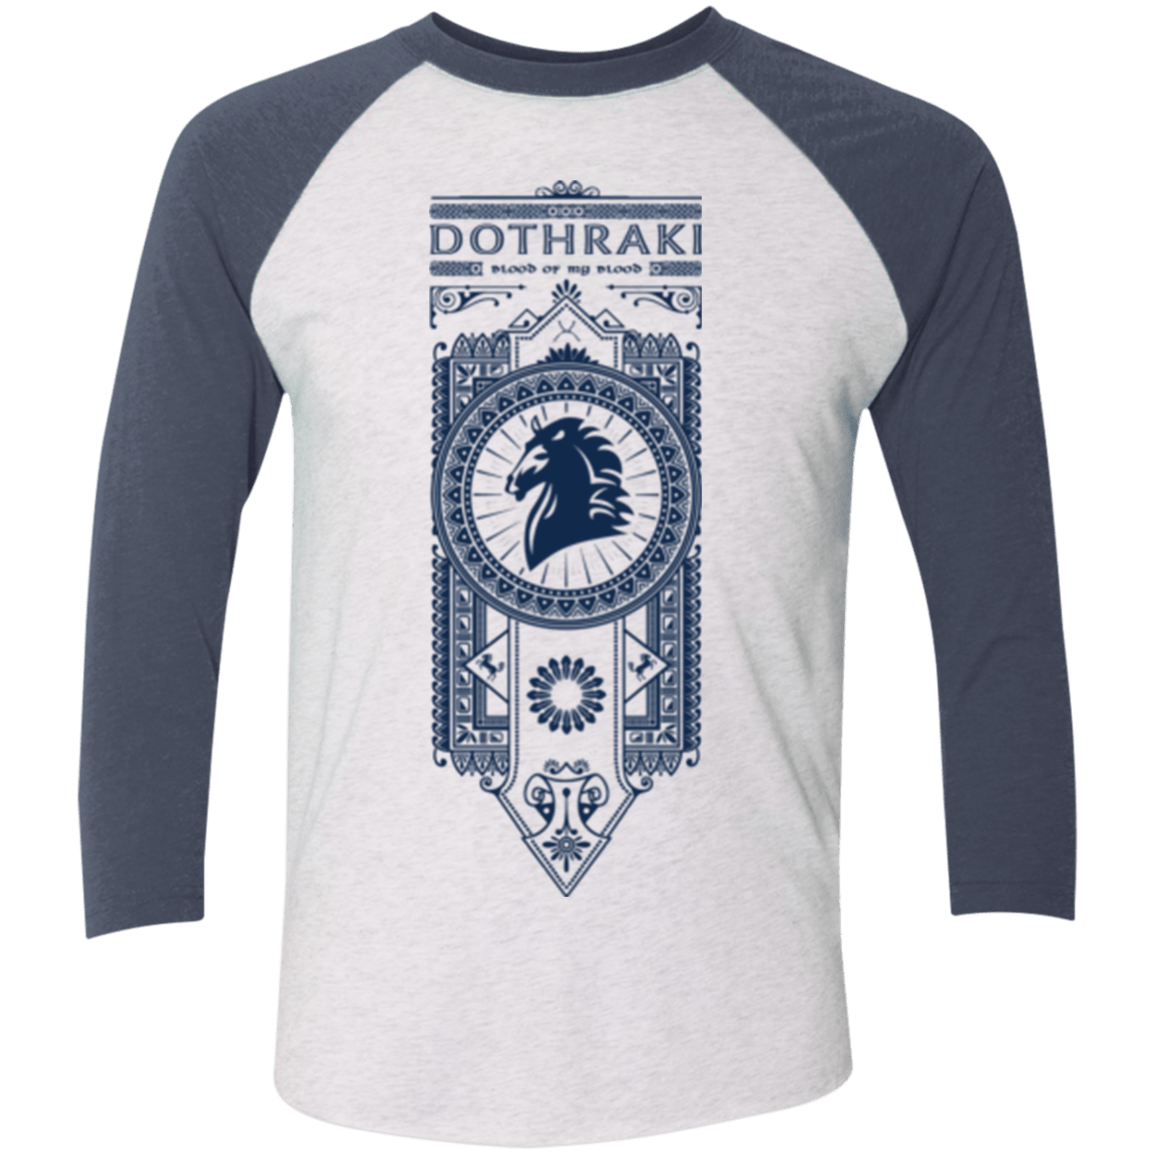 T-Shirts Heather White/Indigo / X-Small Dothraki Men's Triblend 3/4 Sleeve